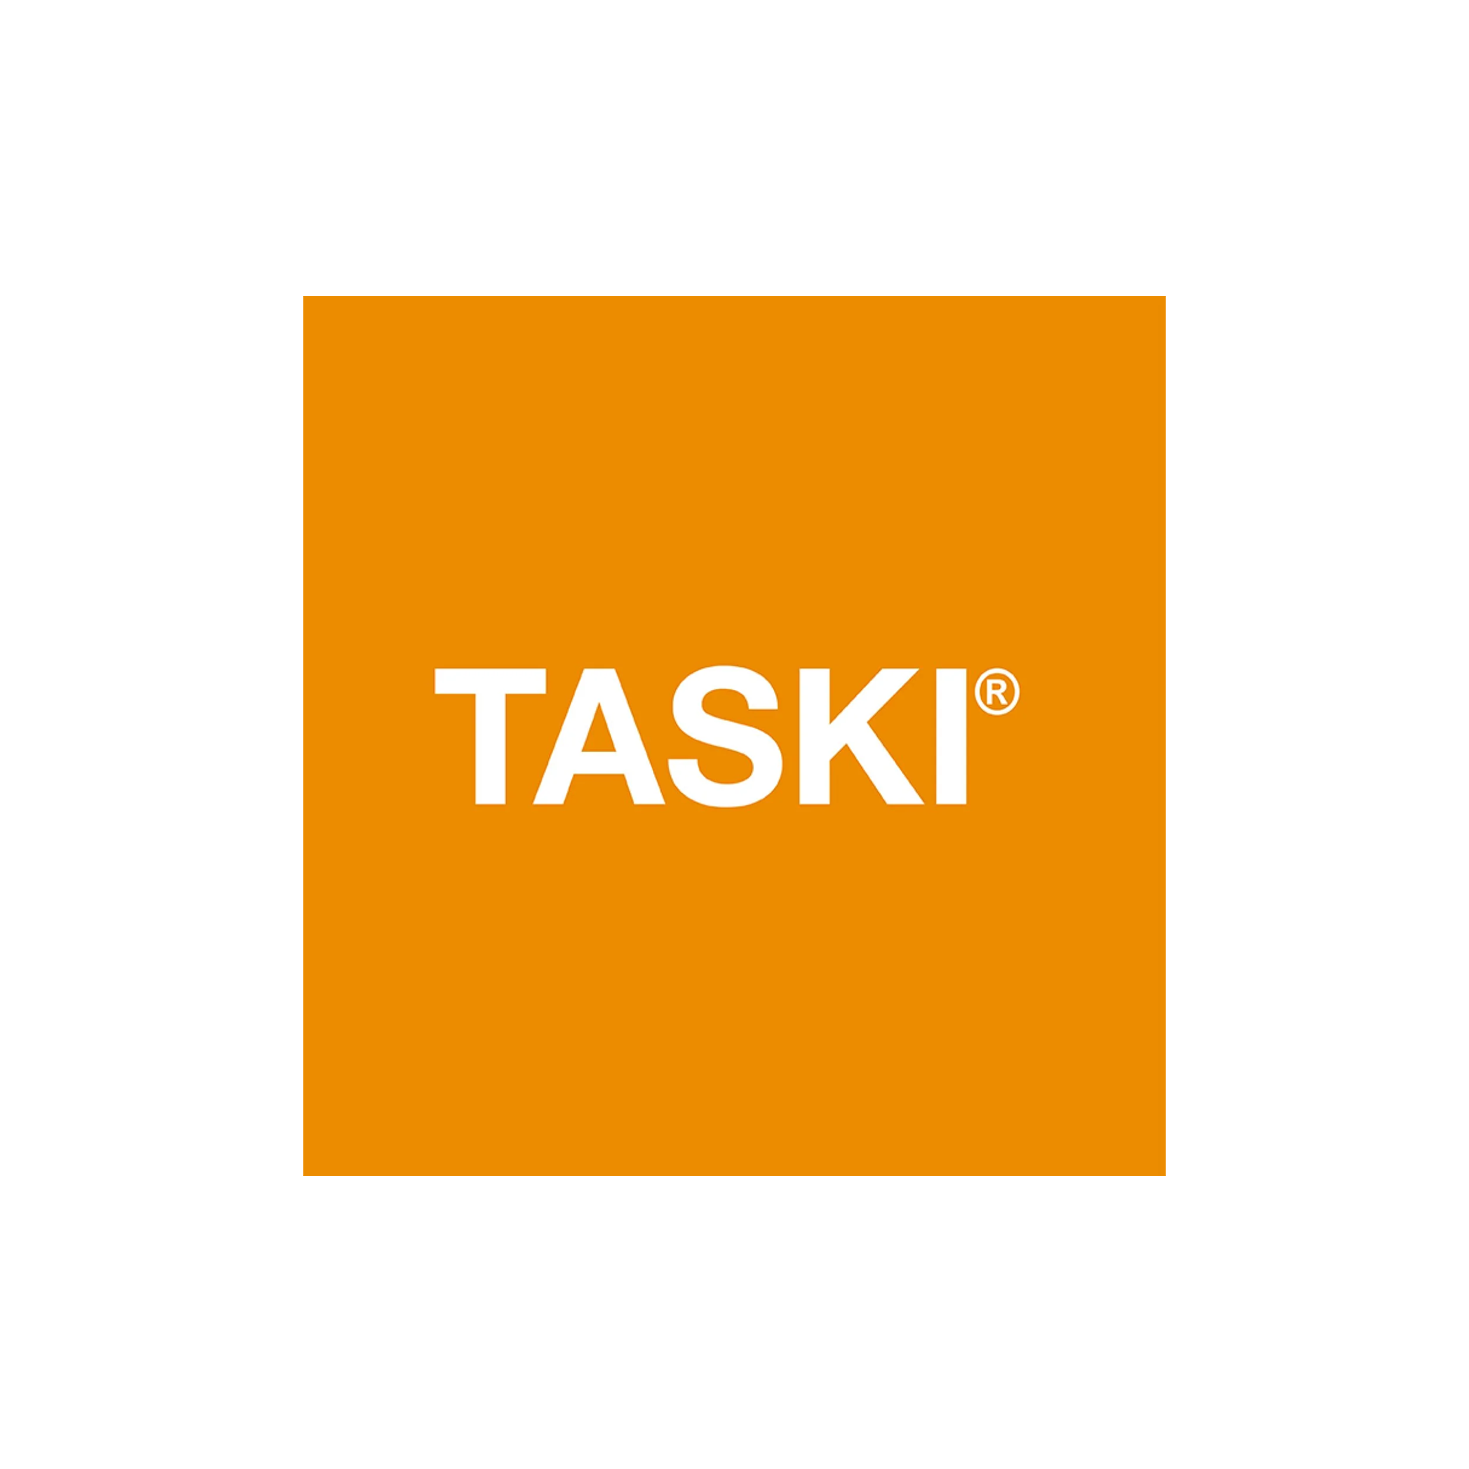 TASKI swingo 5000 B nagyméretű, vezetőüléses, automata súrológép